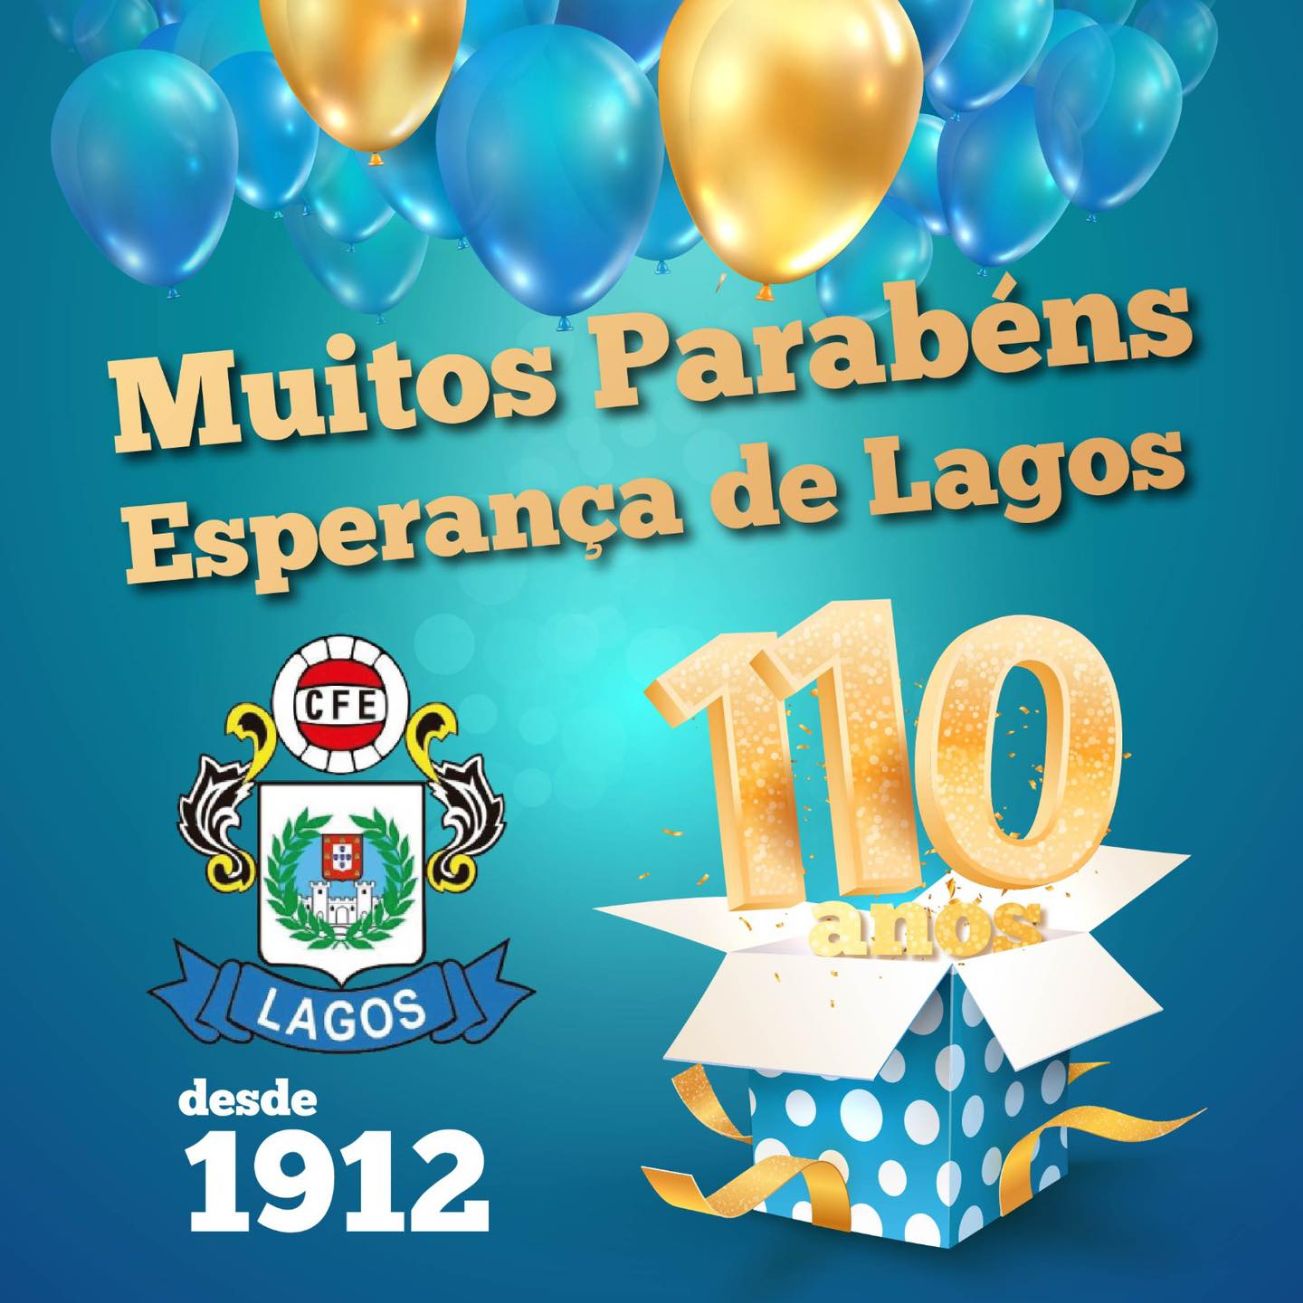 Futebol: Clube de Futebol Esperança de Lagos celebra 110 anos de história e paixão pelo desporto